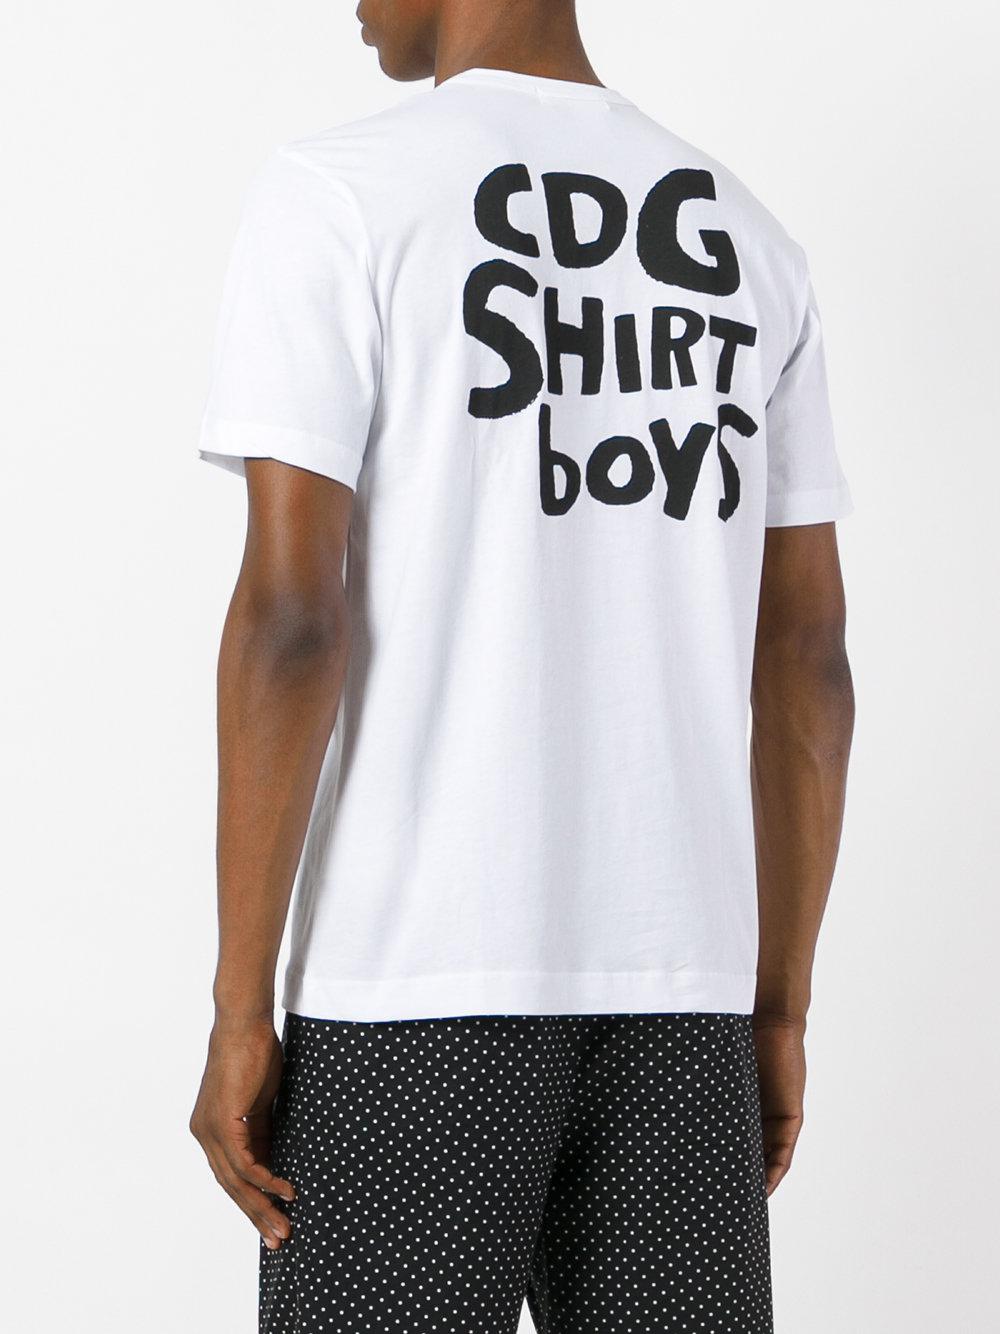 Lyst - Comme Des Garçons 'cdg Shirt Boys' Printed T-shirt in White for Men